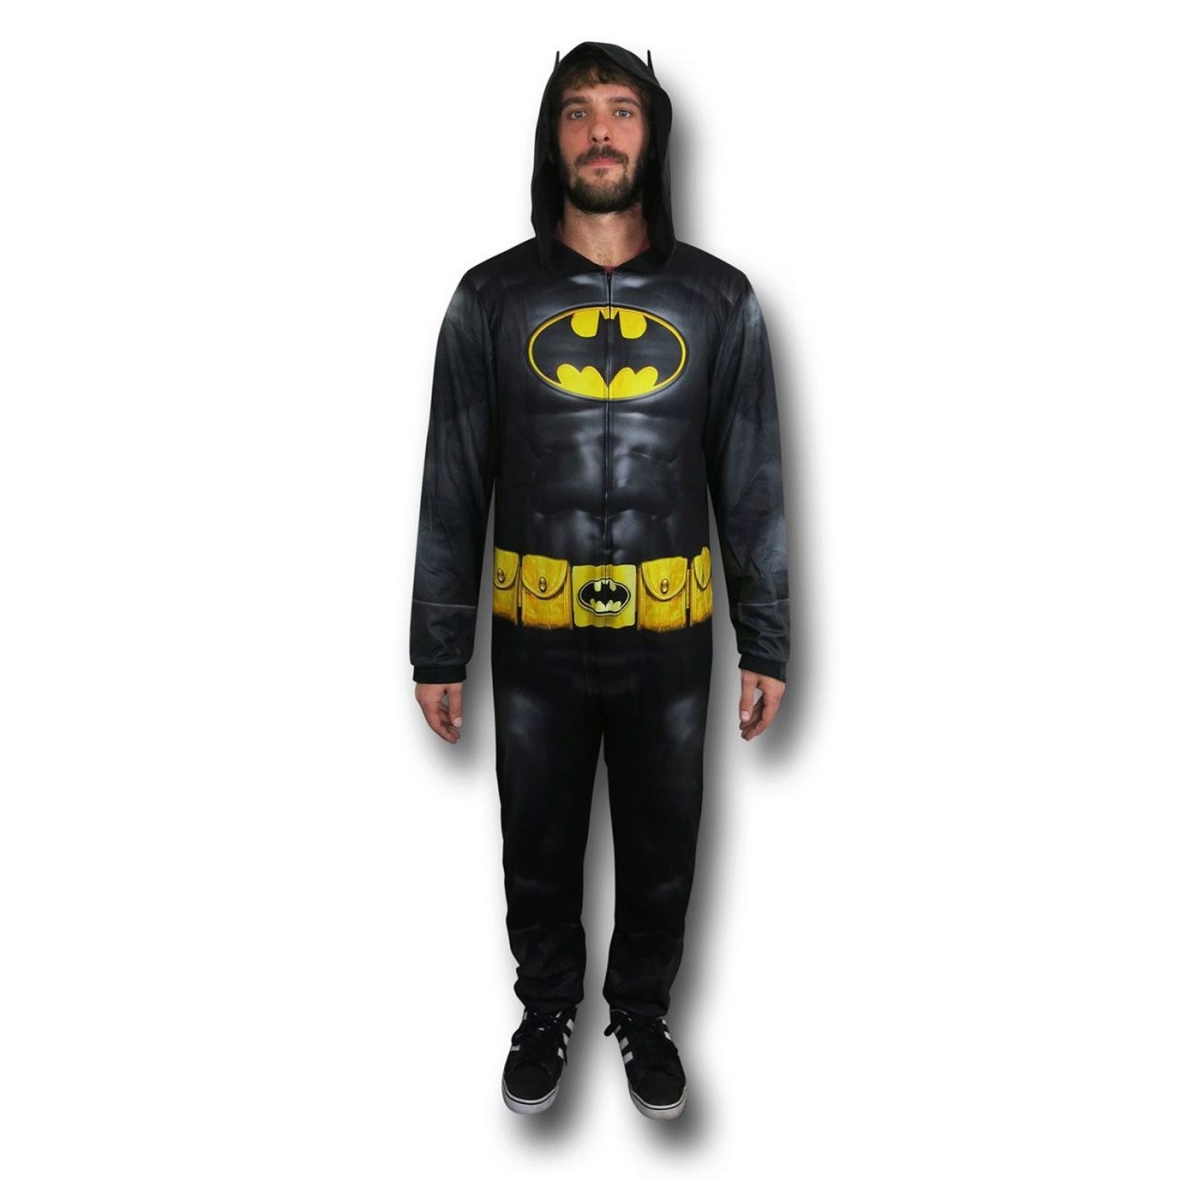 Picture of Batman pajdksubunion-S Batman Men Dark Knight Sublimated Union Suit - Small